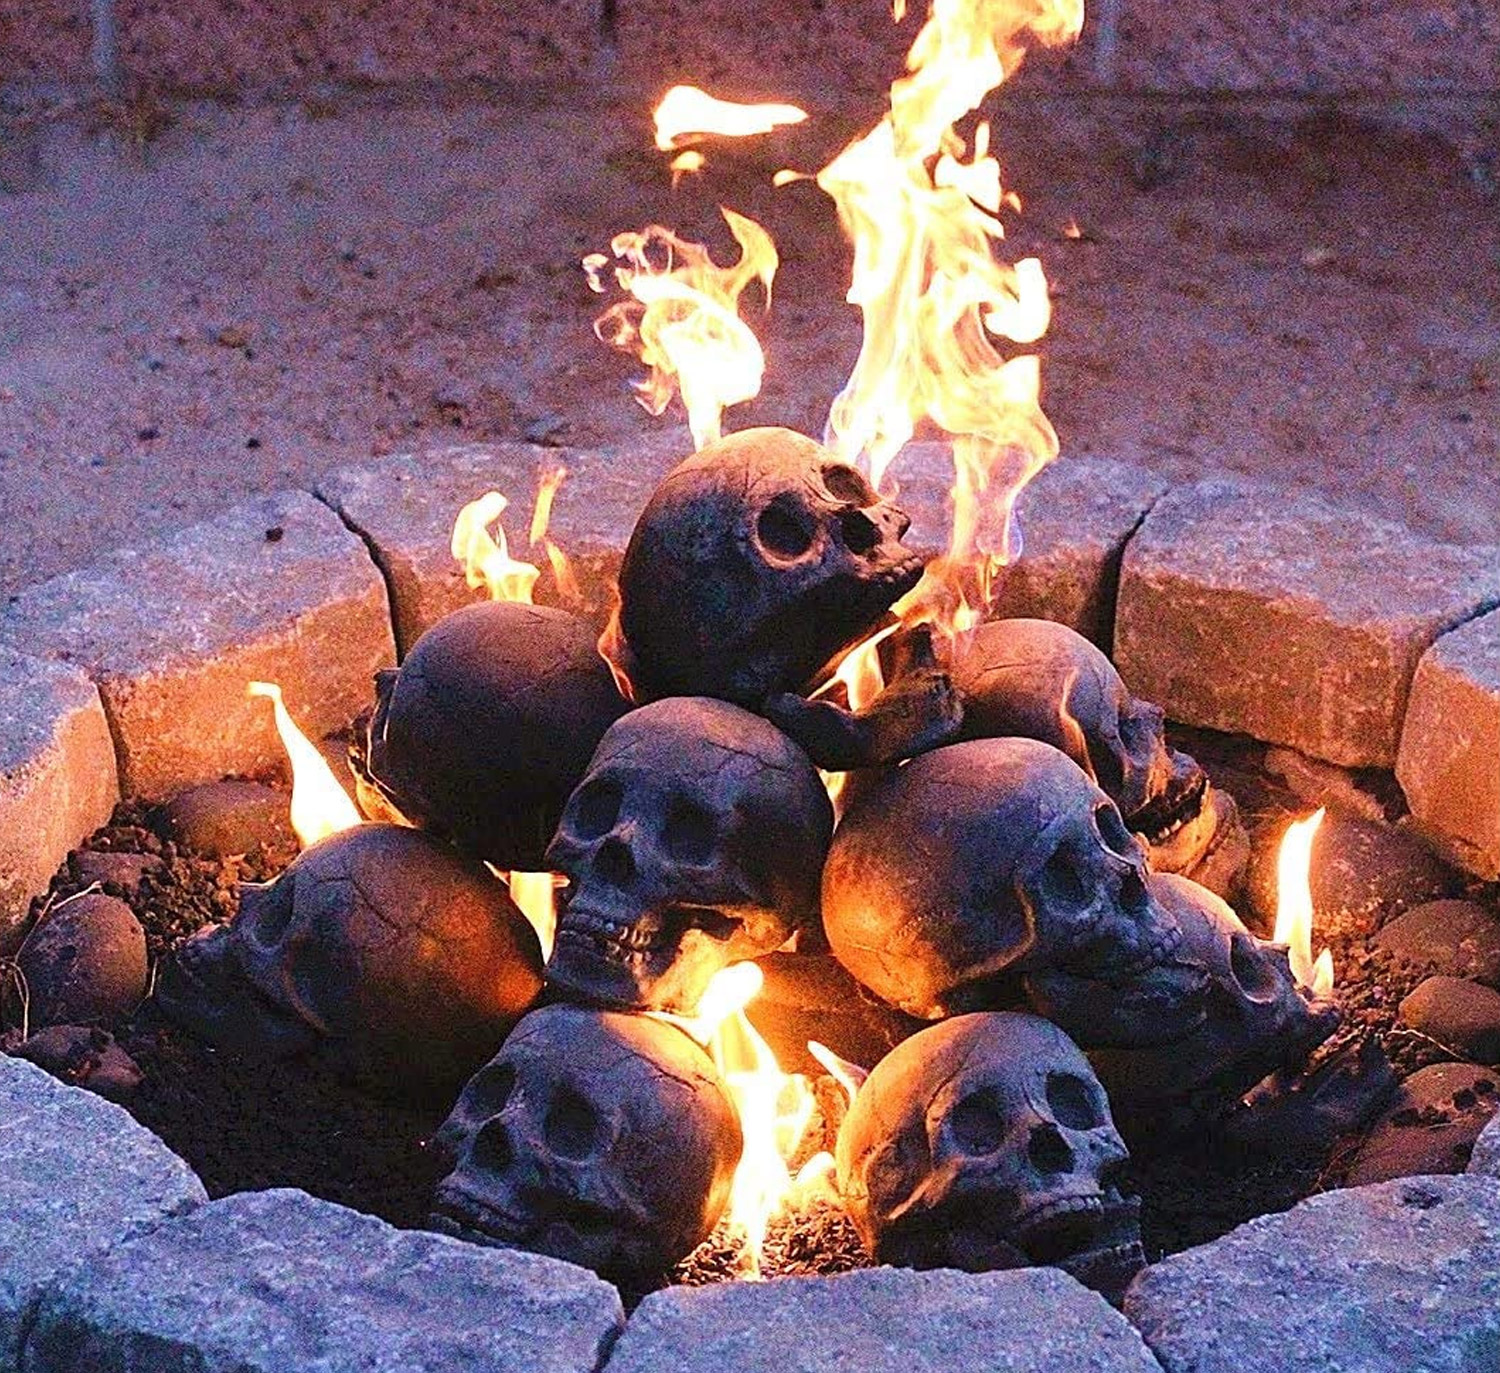 Faux human skulls fire pit